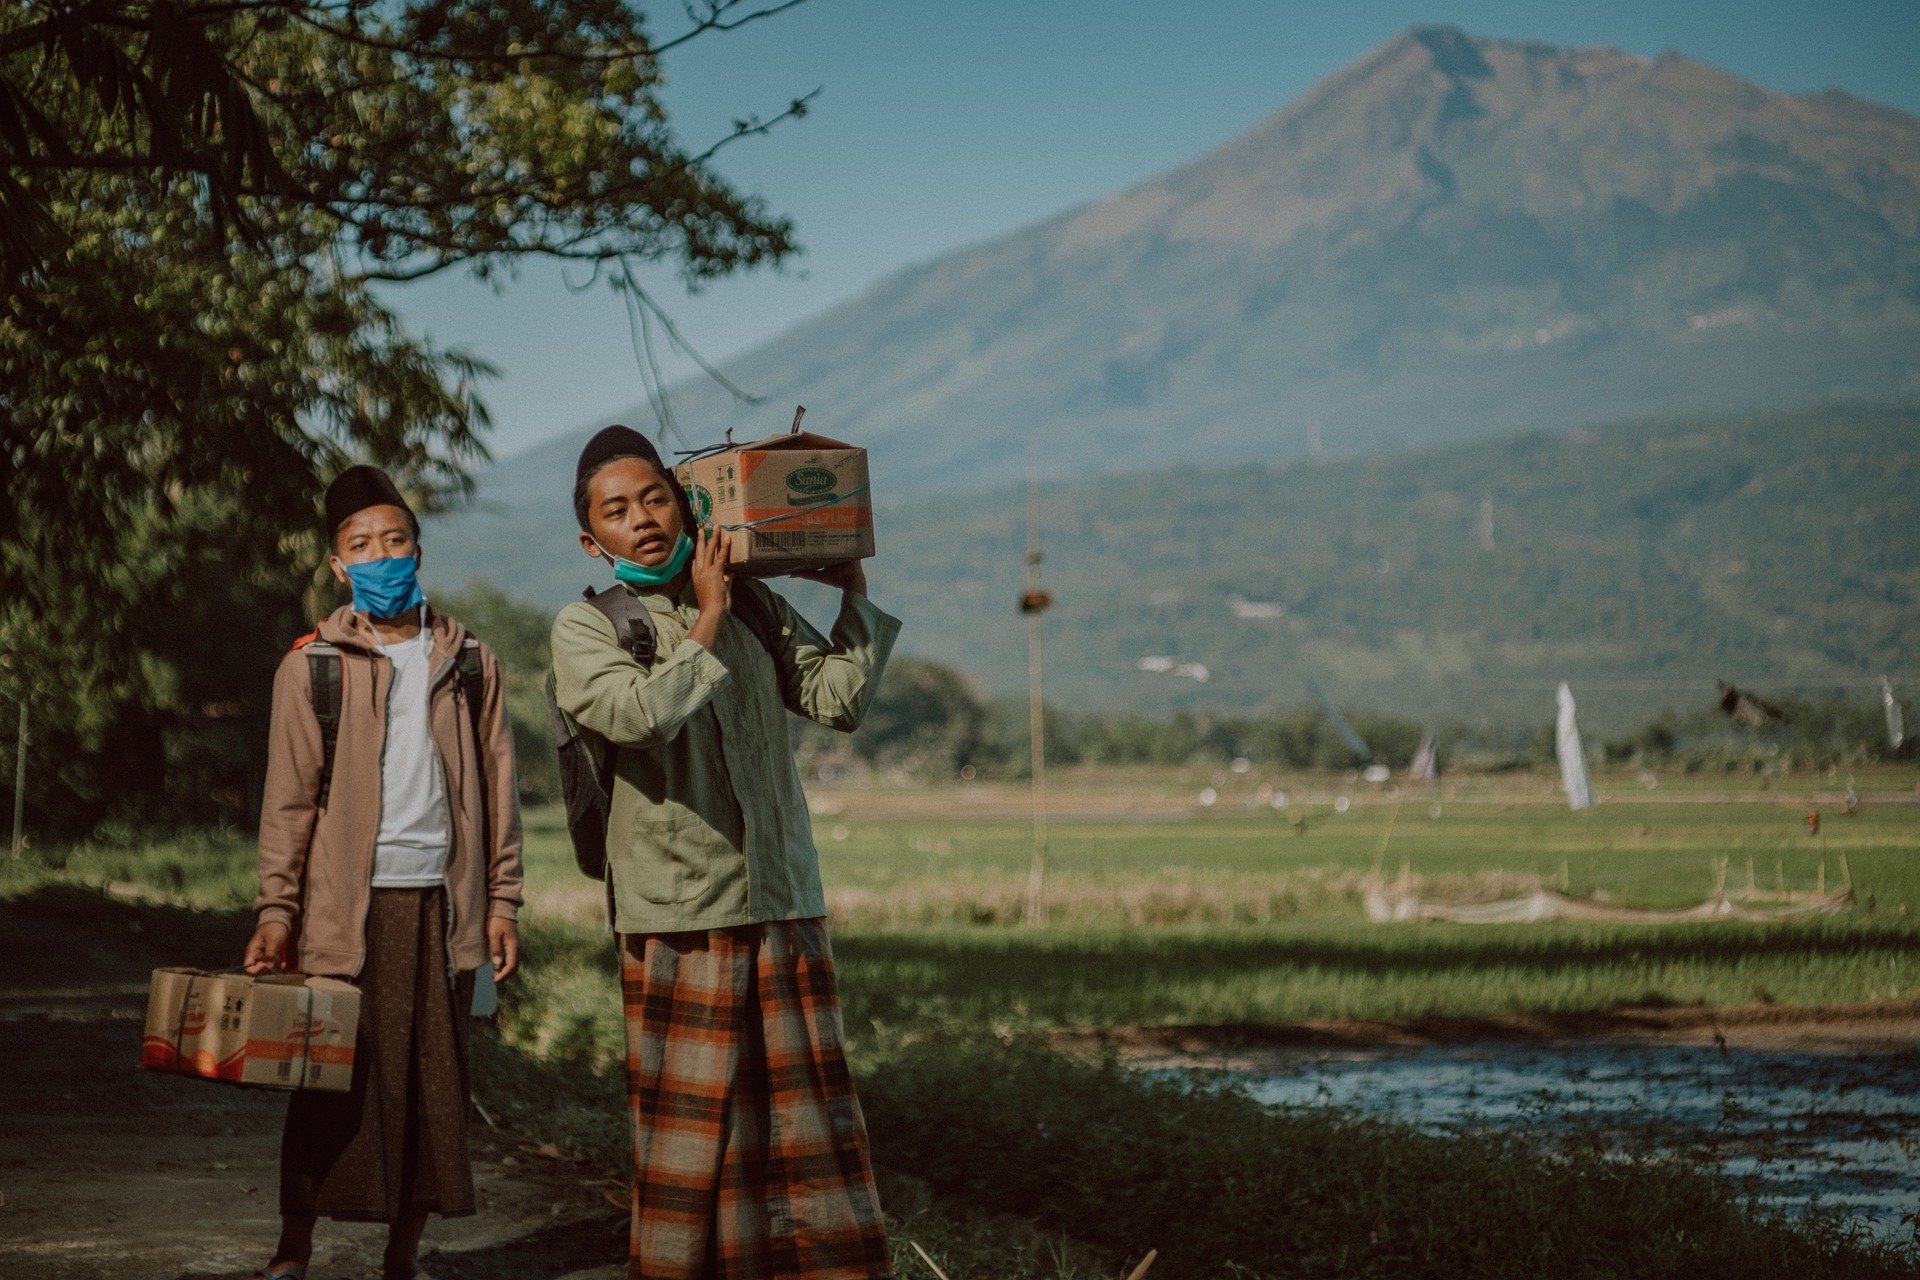 Melangkah Maju. Reintegrasi Korban Perdagangan Orang (trafficking) di Indonesia dalam Keluarga dan Masyarakat